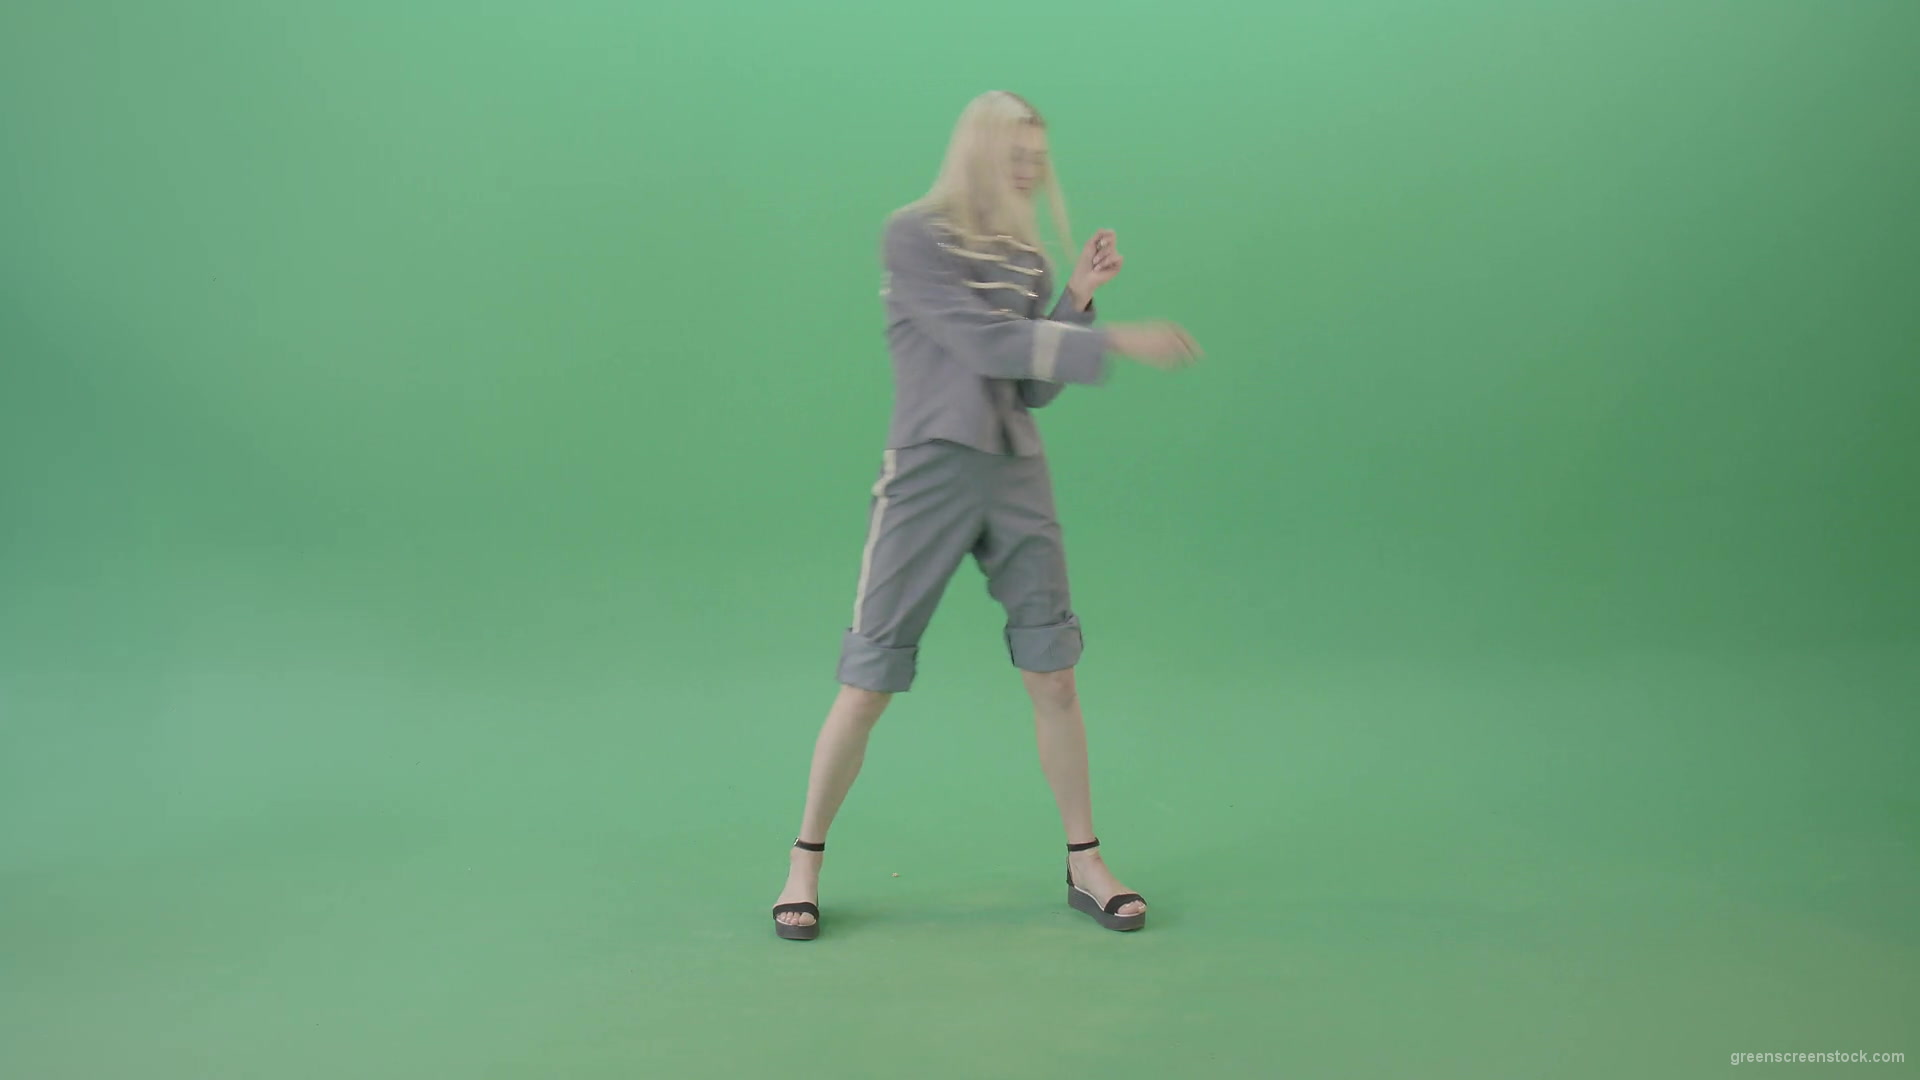 Techno-rave-blonde-girl-dancing-house-chill-isolated-on-green-screen-4K-Video-Footage-1920_002 Green Screen Stock